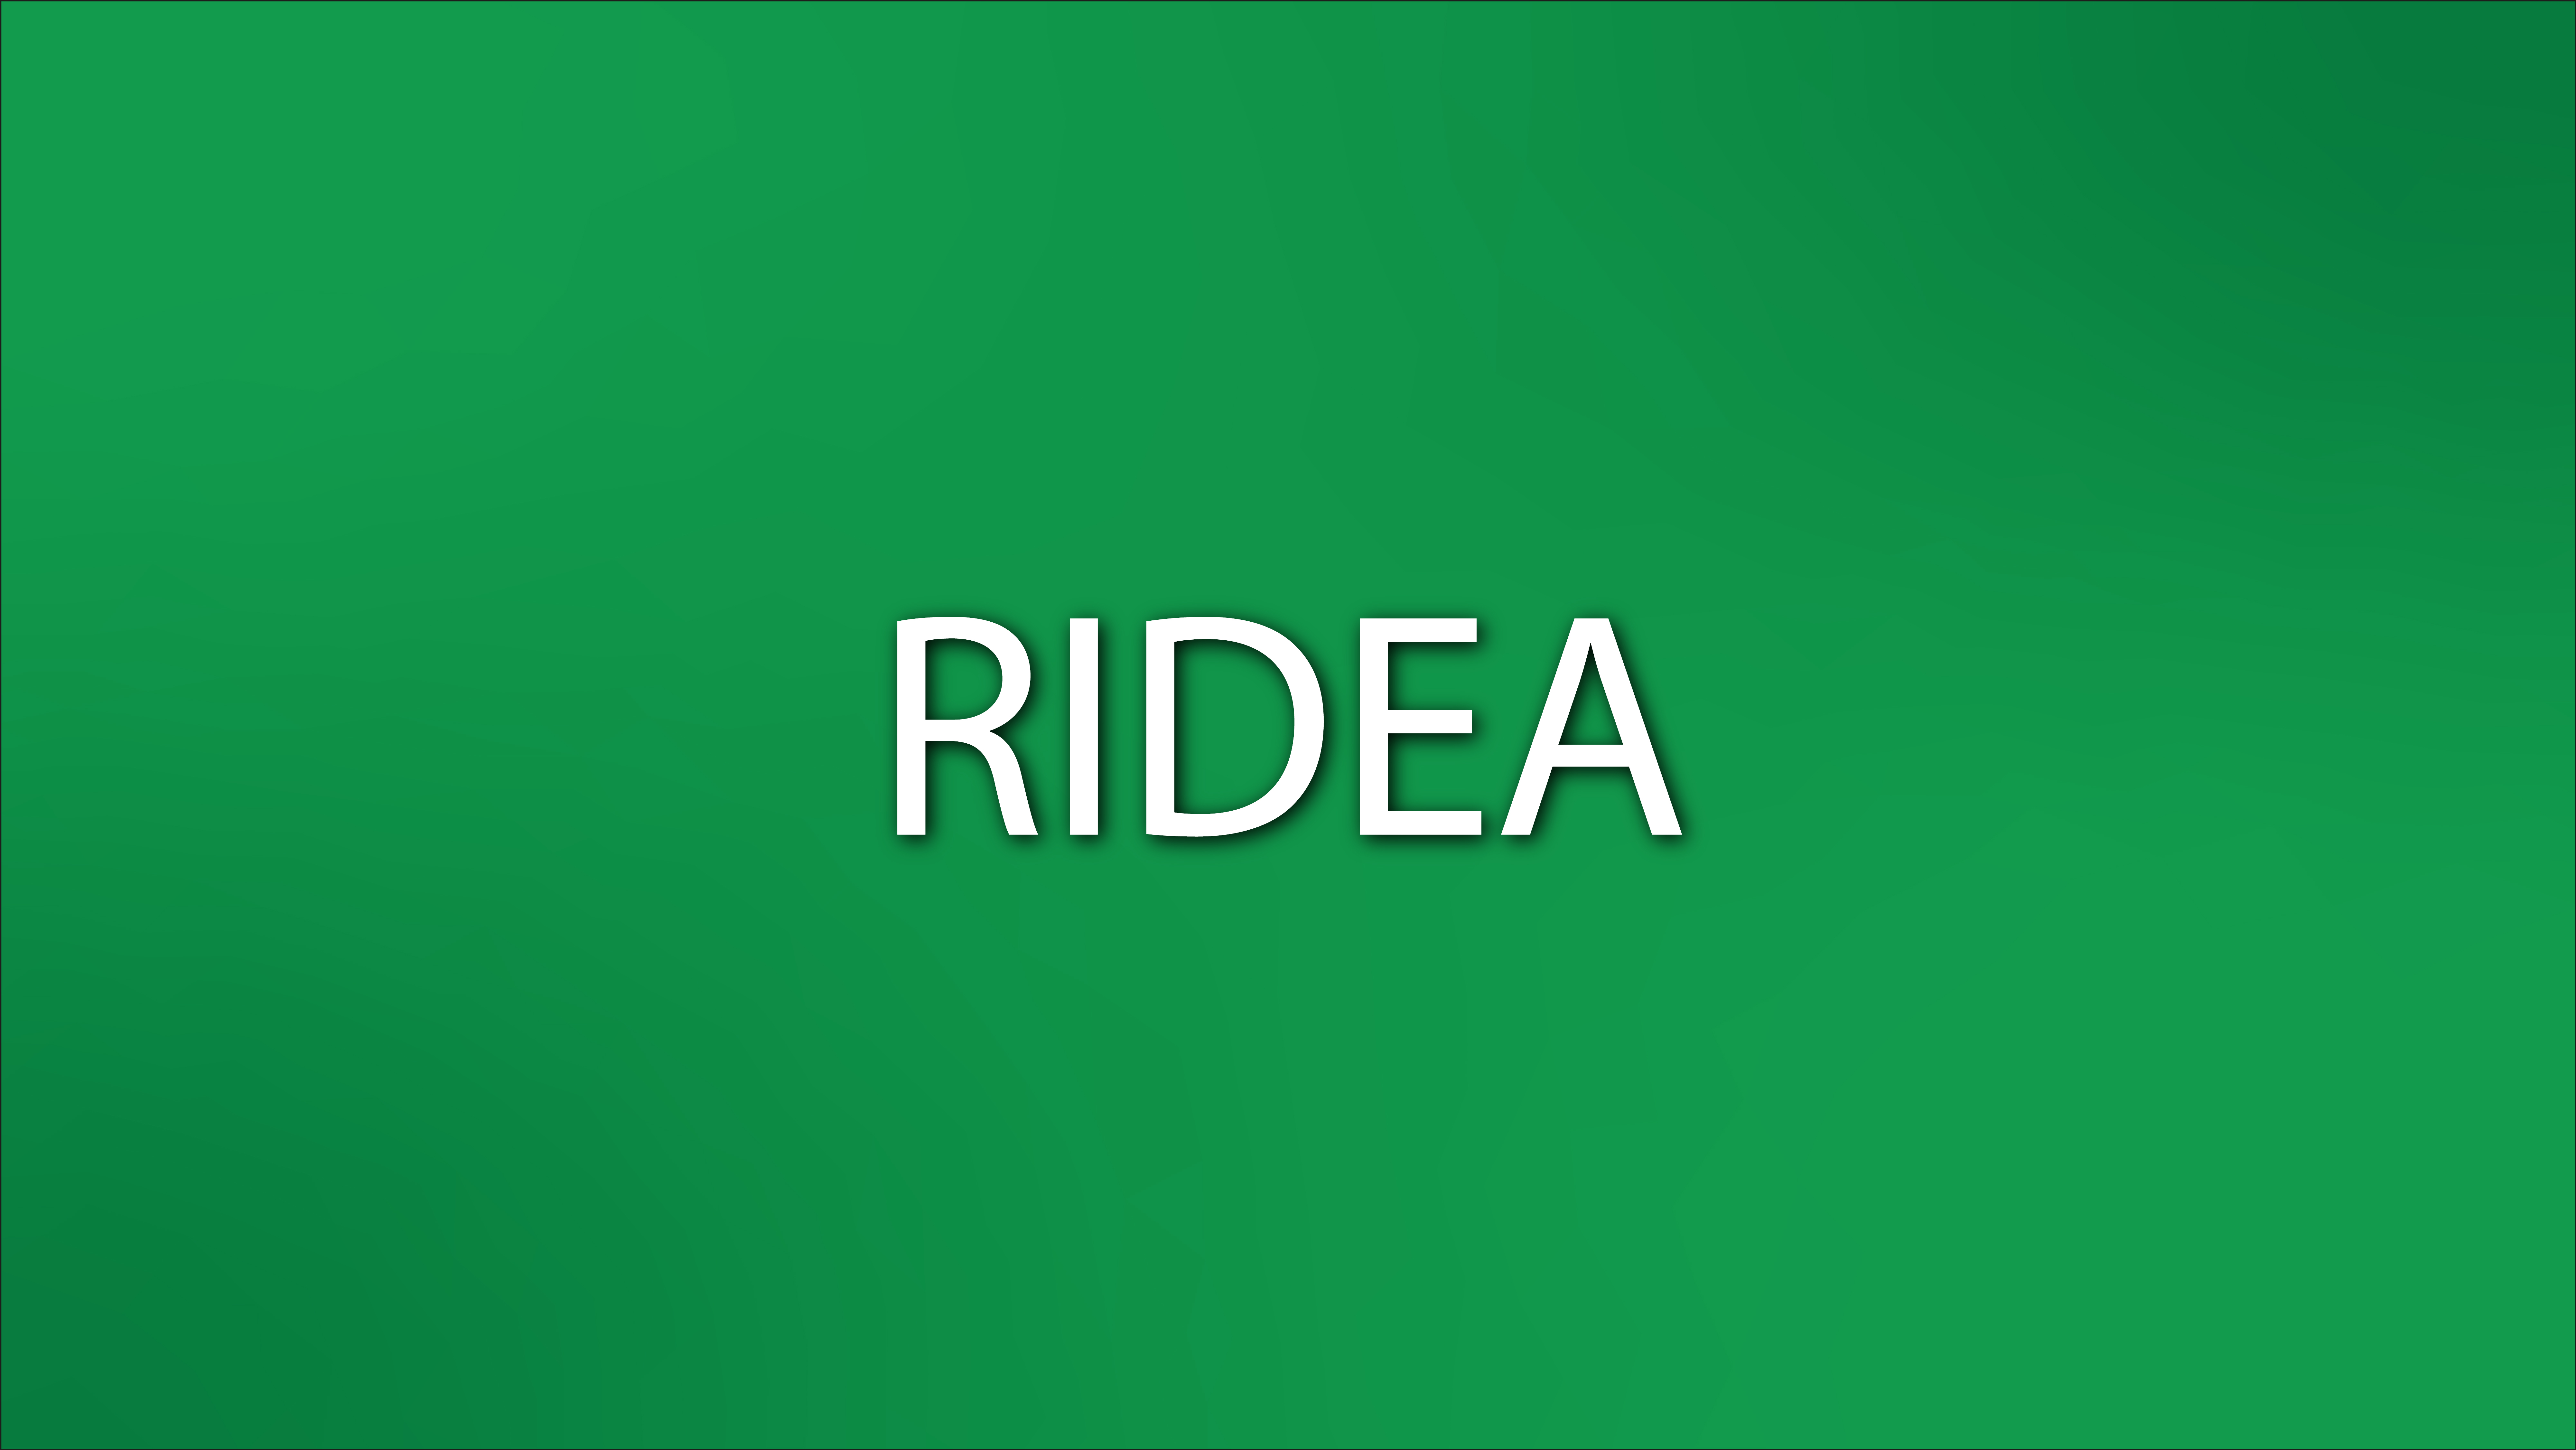 Évolution du RICA en RIDEA : Vers quoi s’oriente-t-on ?